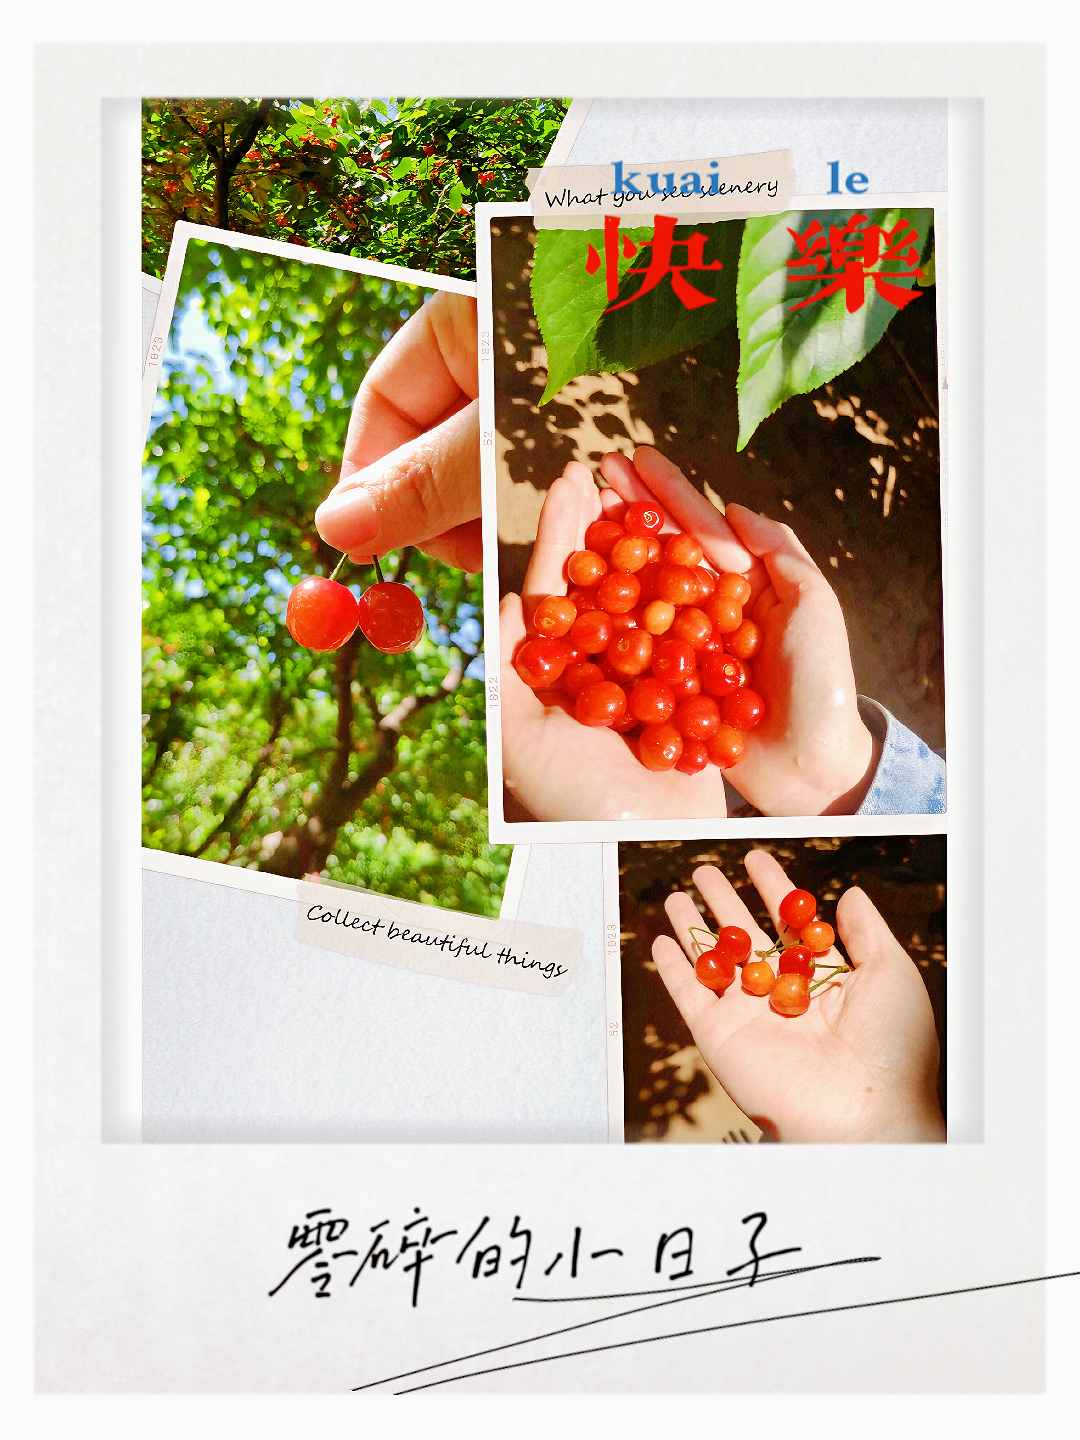 郑州樱桃沟——一个品味细节的地方